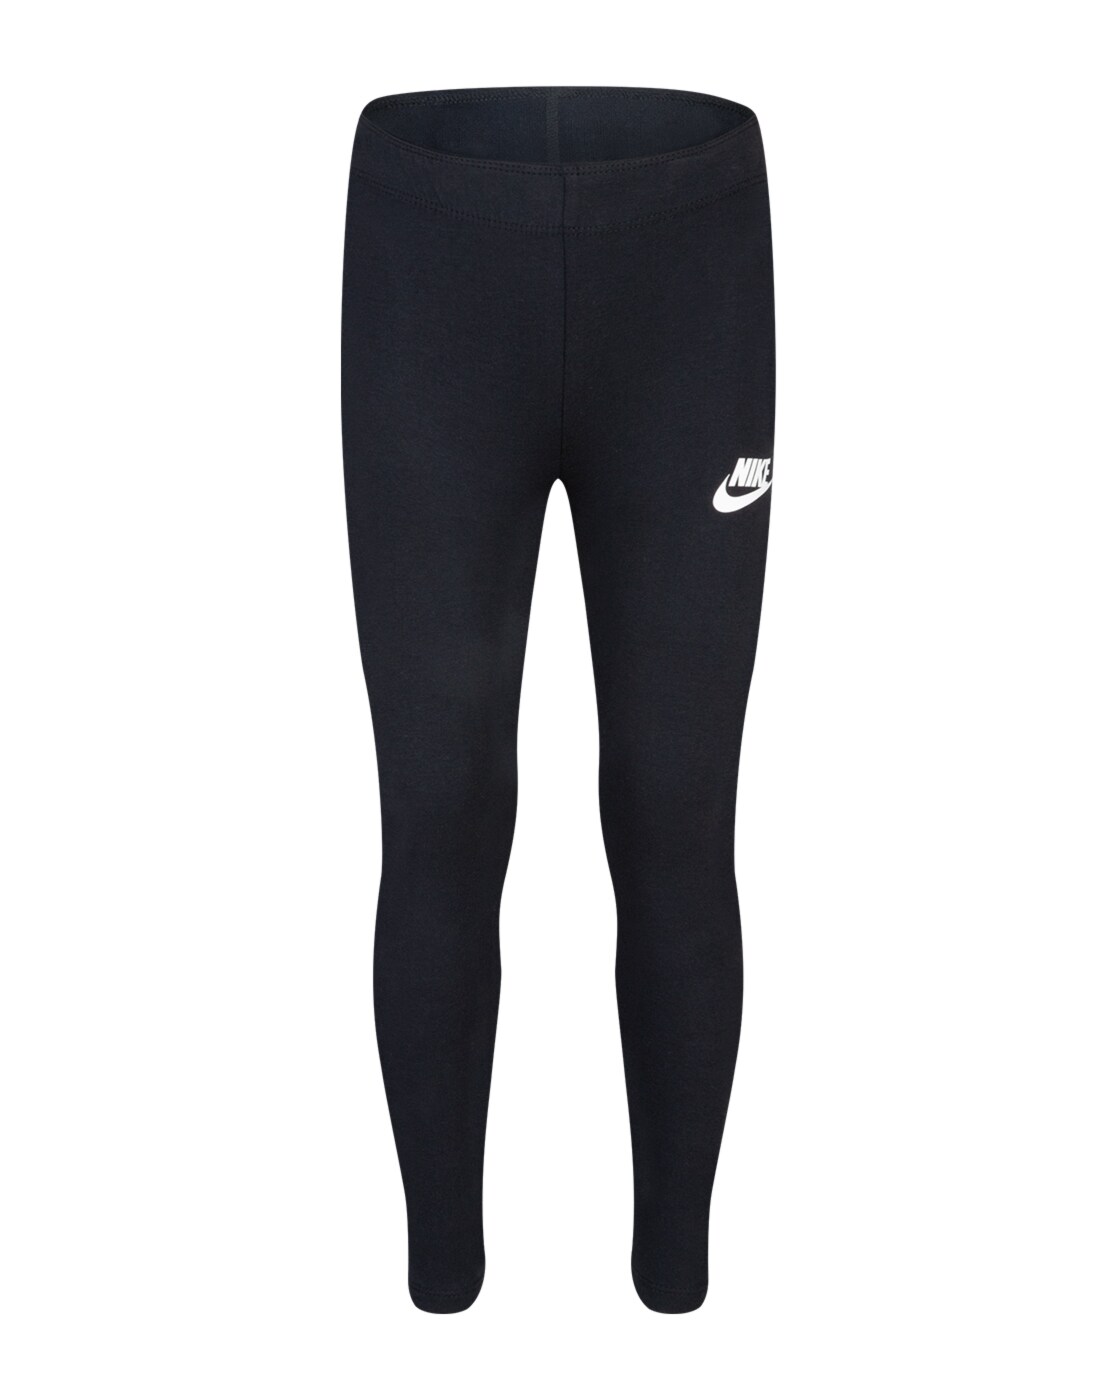 Nike AO9968-010: Women's Pro Black/White Training Leggings - Walmart.com